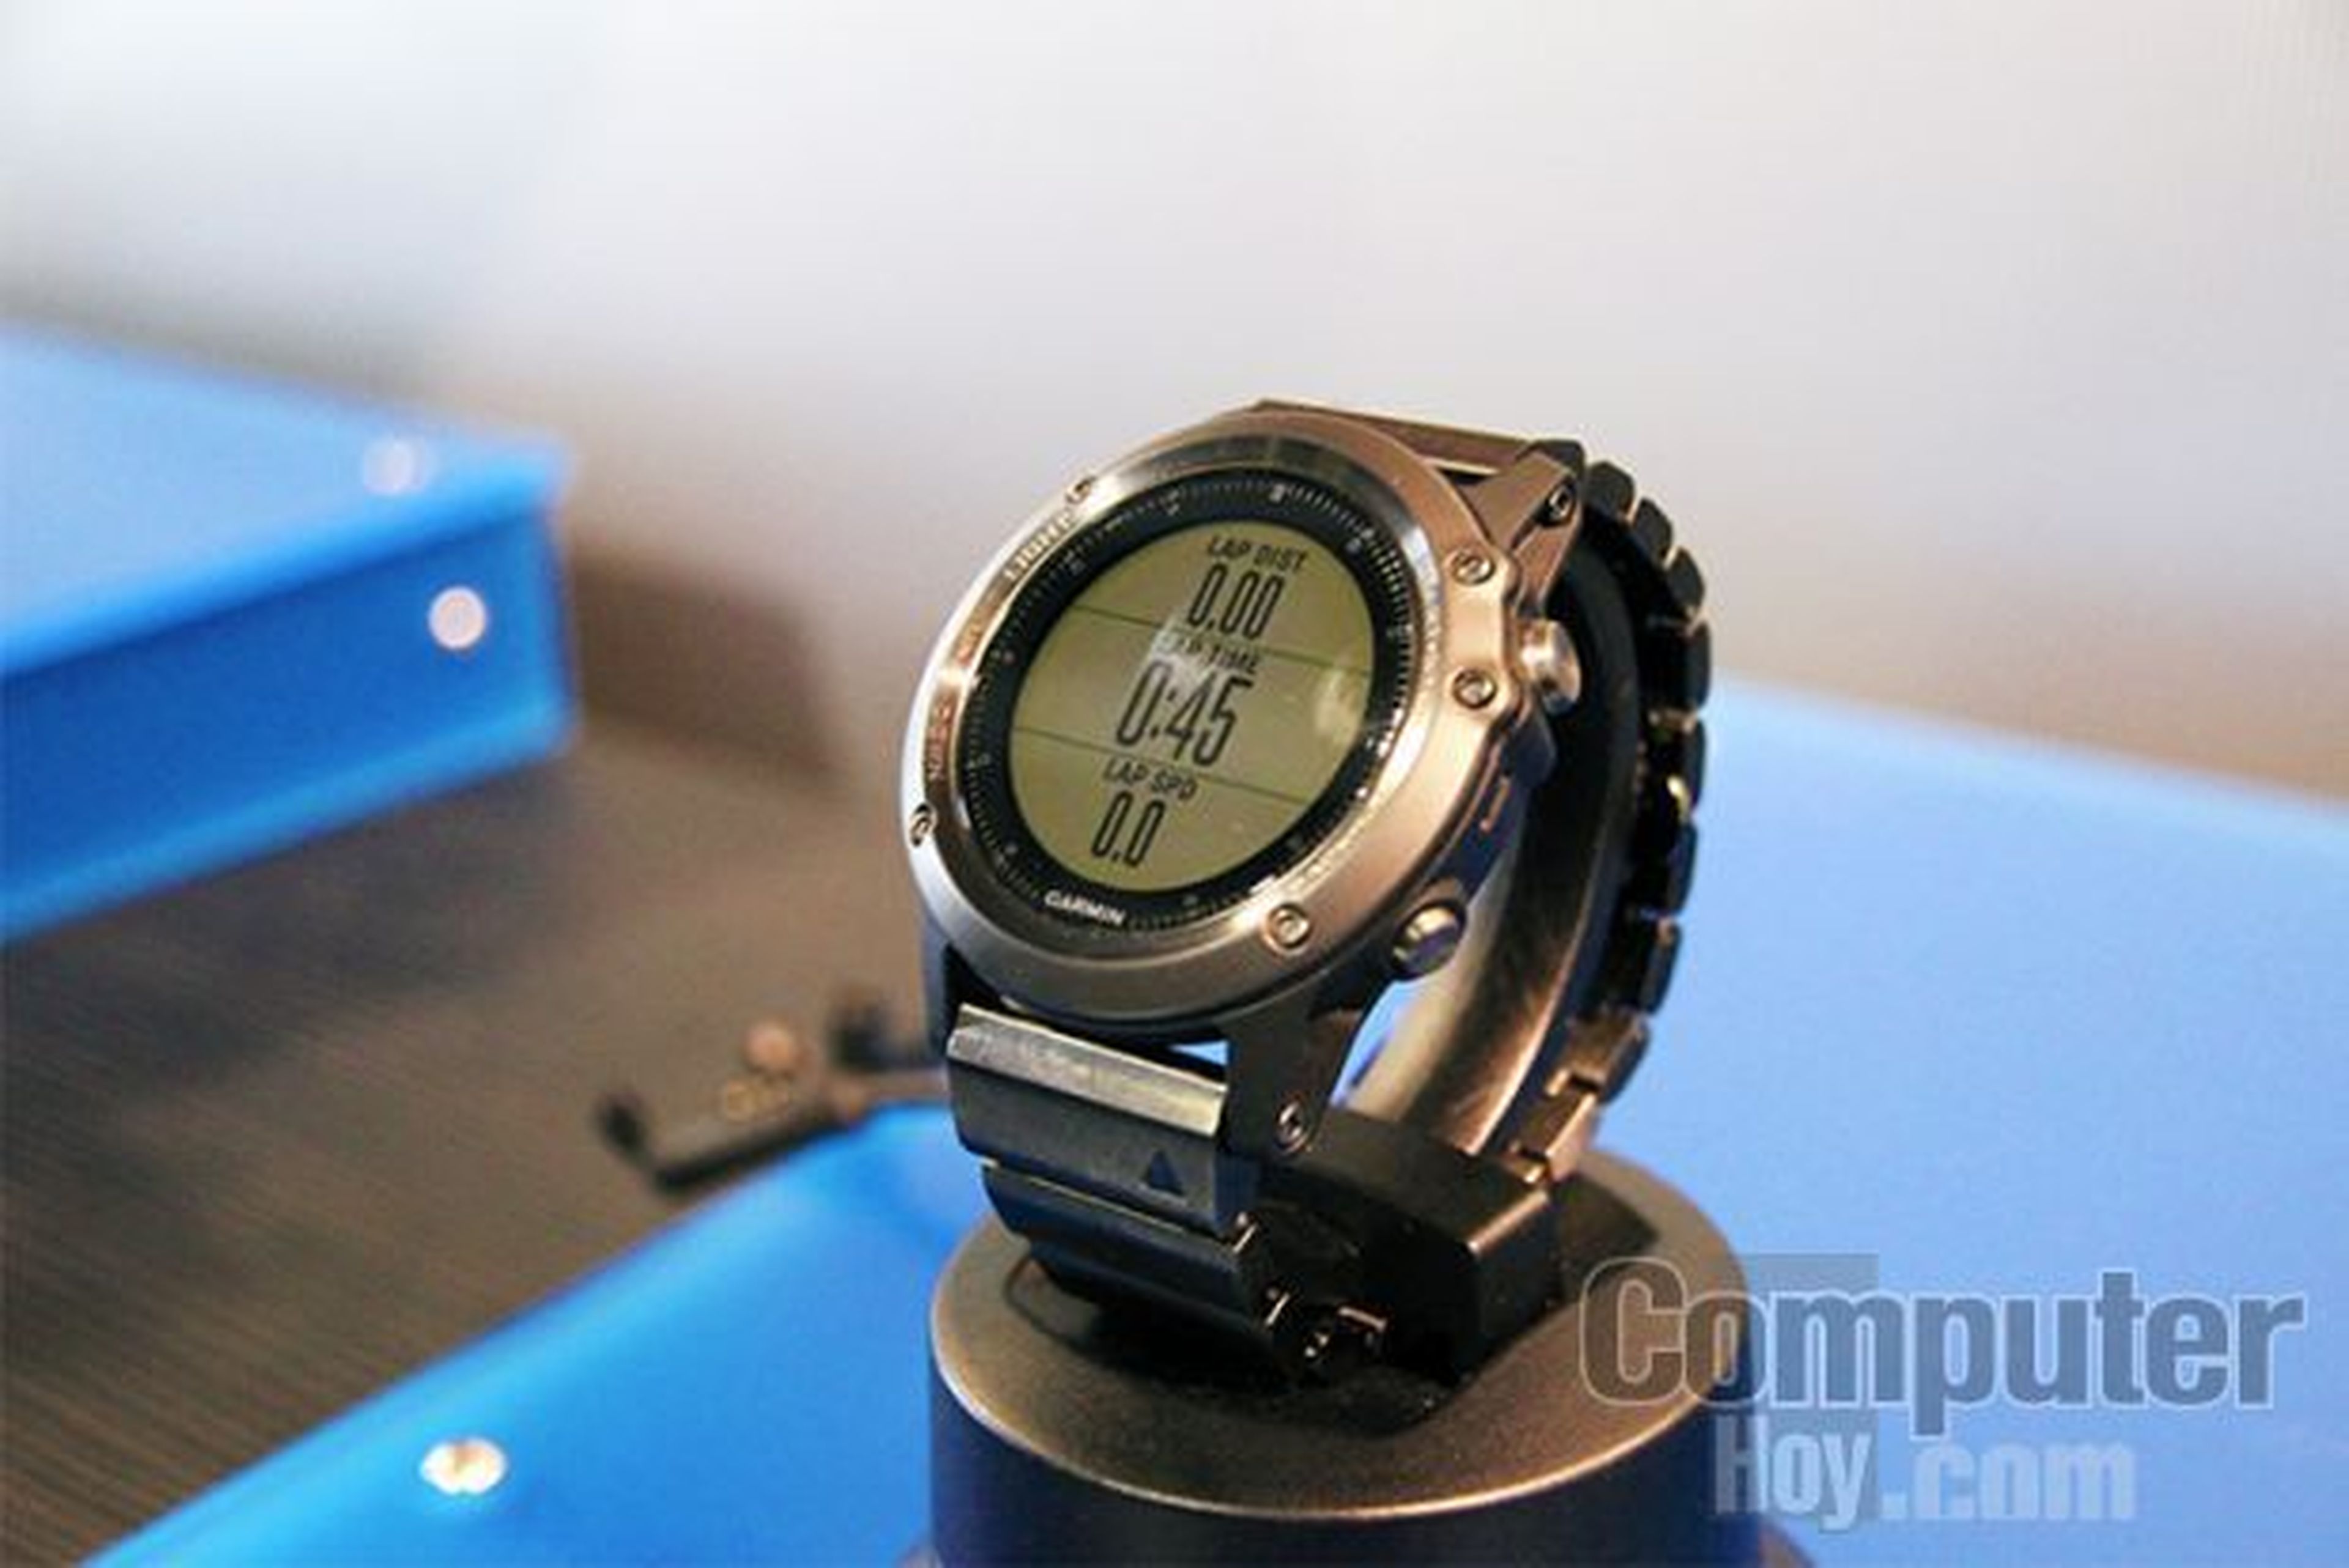 Garmin Fenix 3. El smartwatch con pantalla a color y GPS integrado.